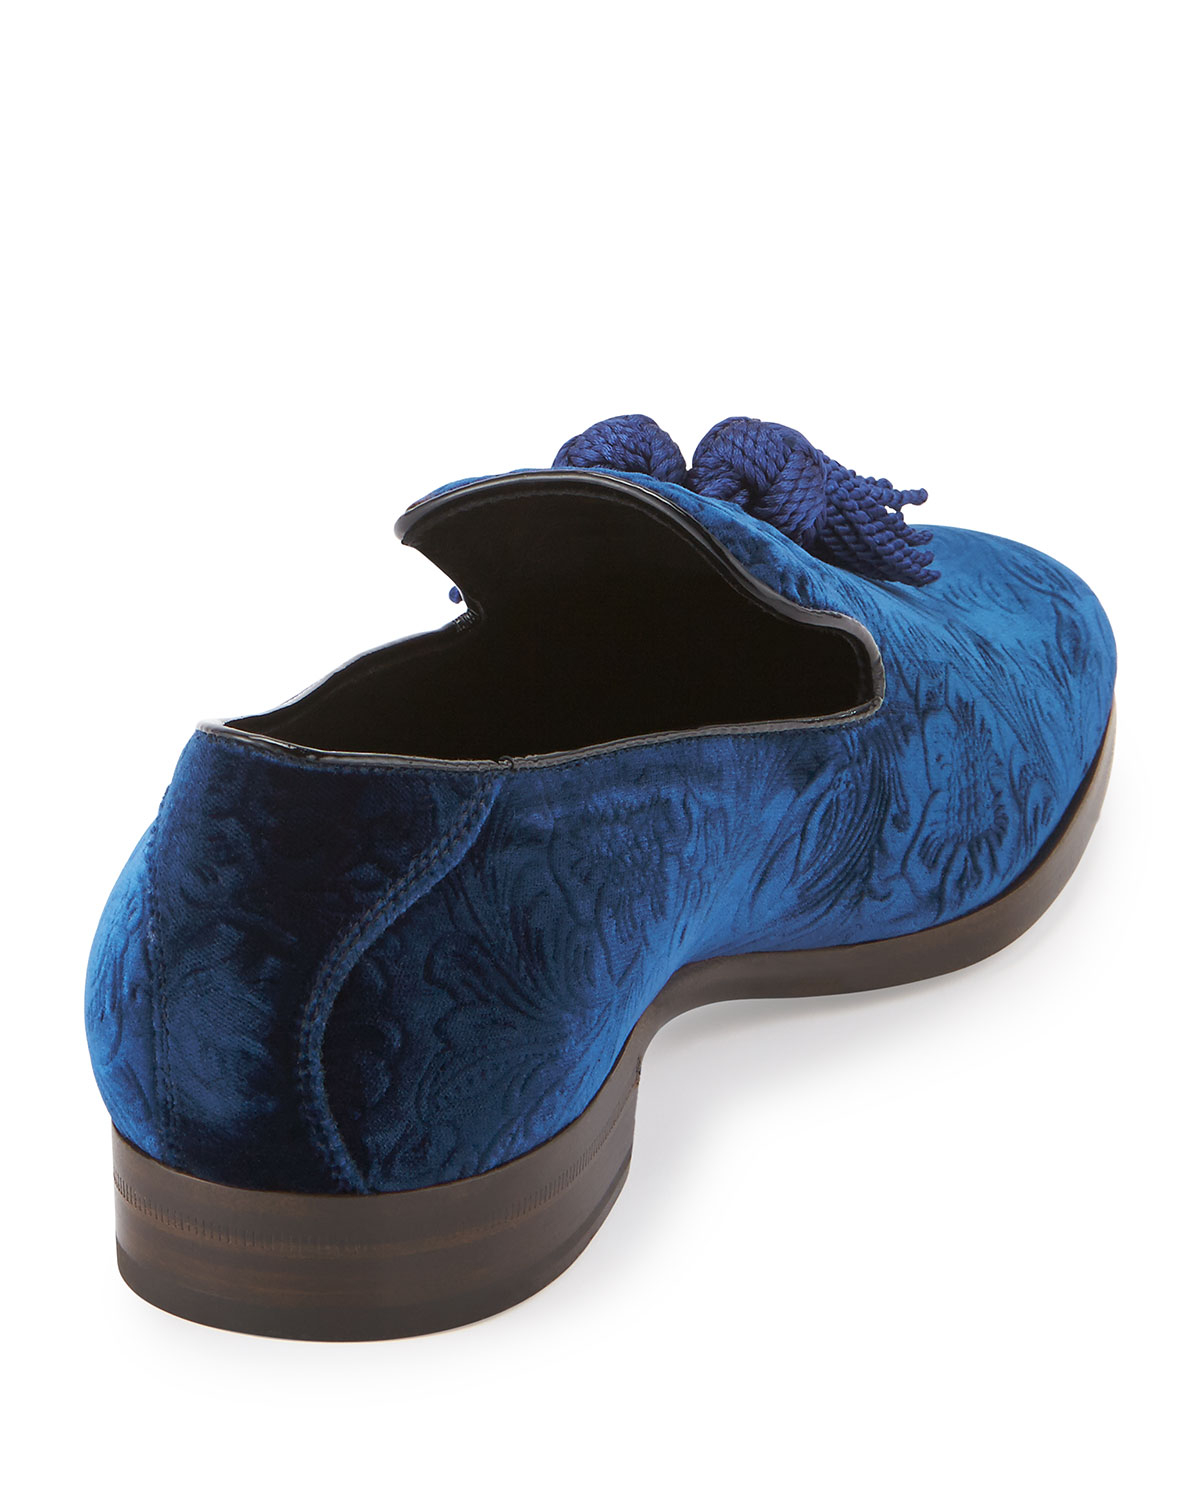 Jimmy Choo Foxley Velvet Tassel Loafer in Blue for Men - Lyst